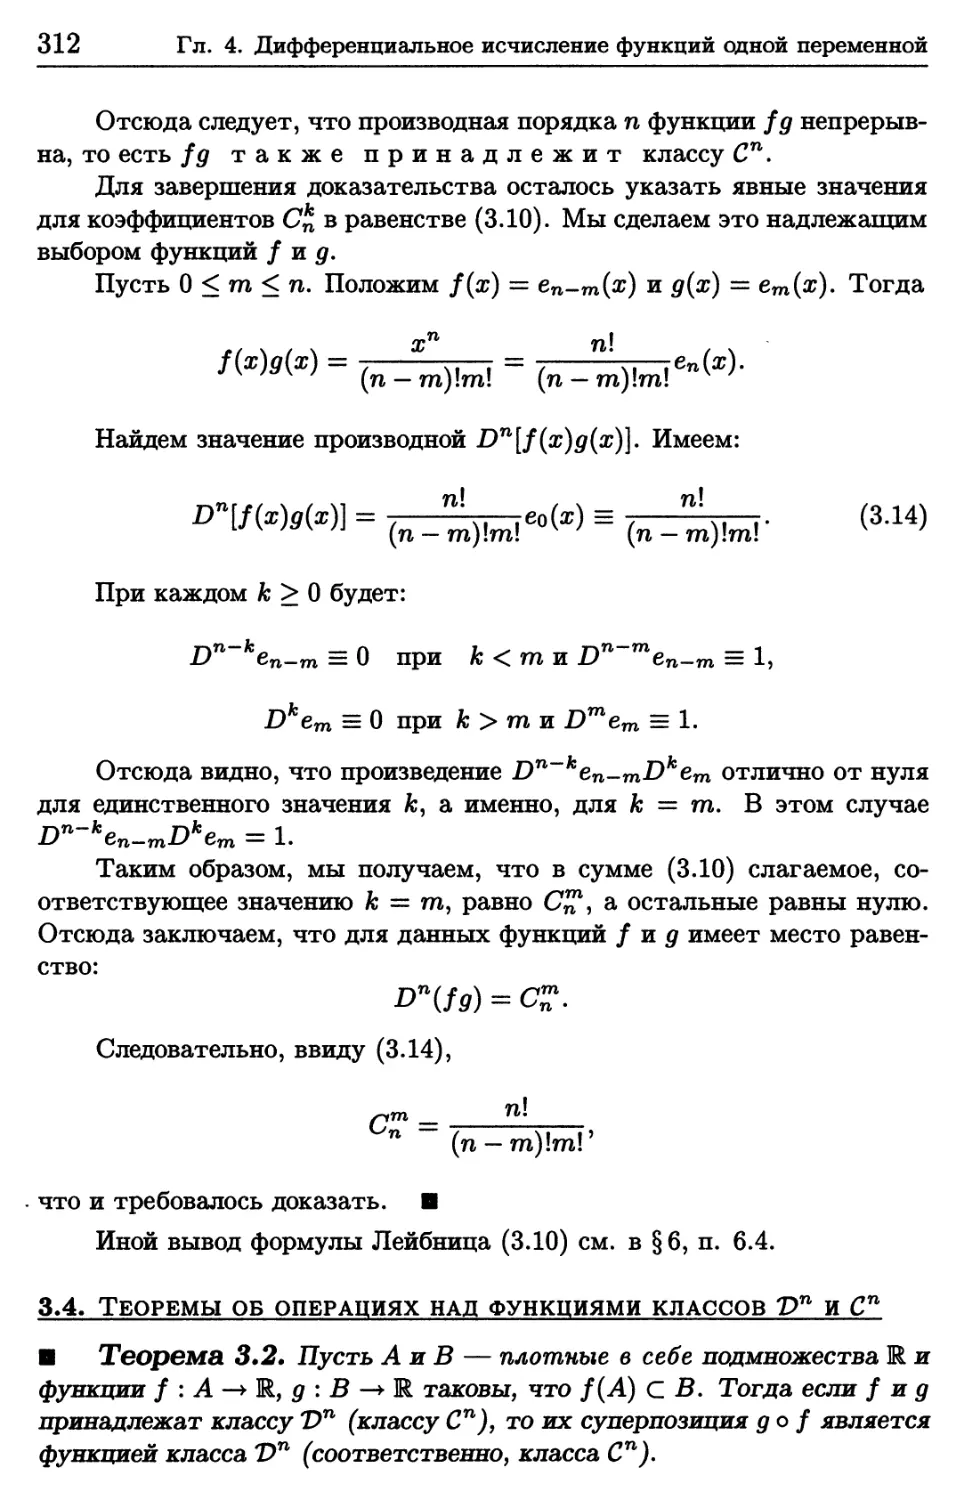 3.4. Теоремы об операциях над функциями классов D^n и C^n